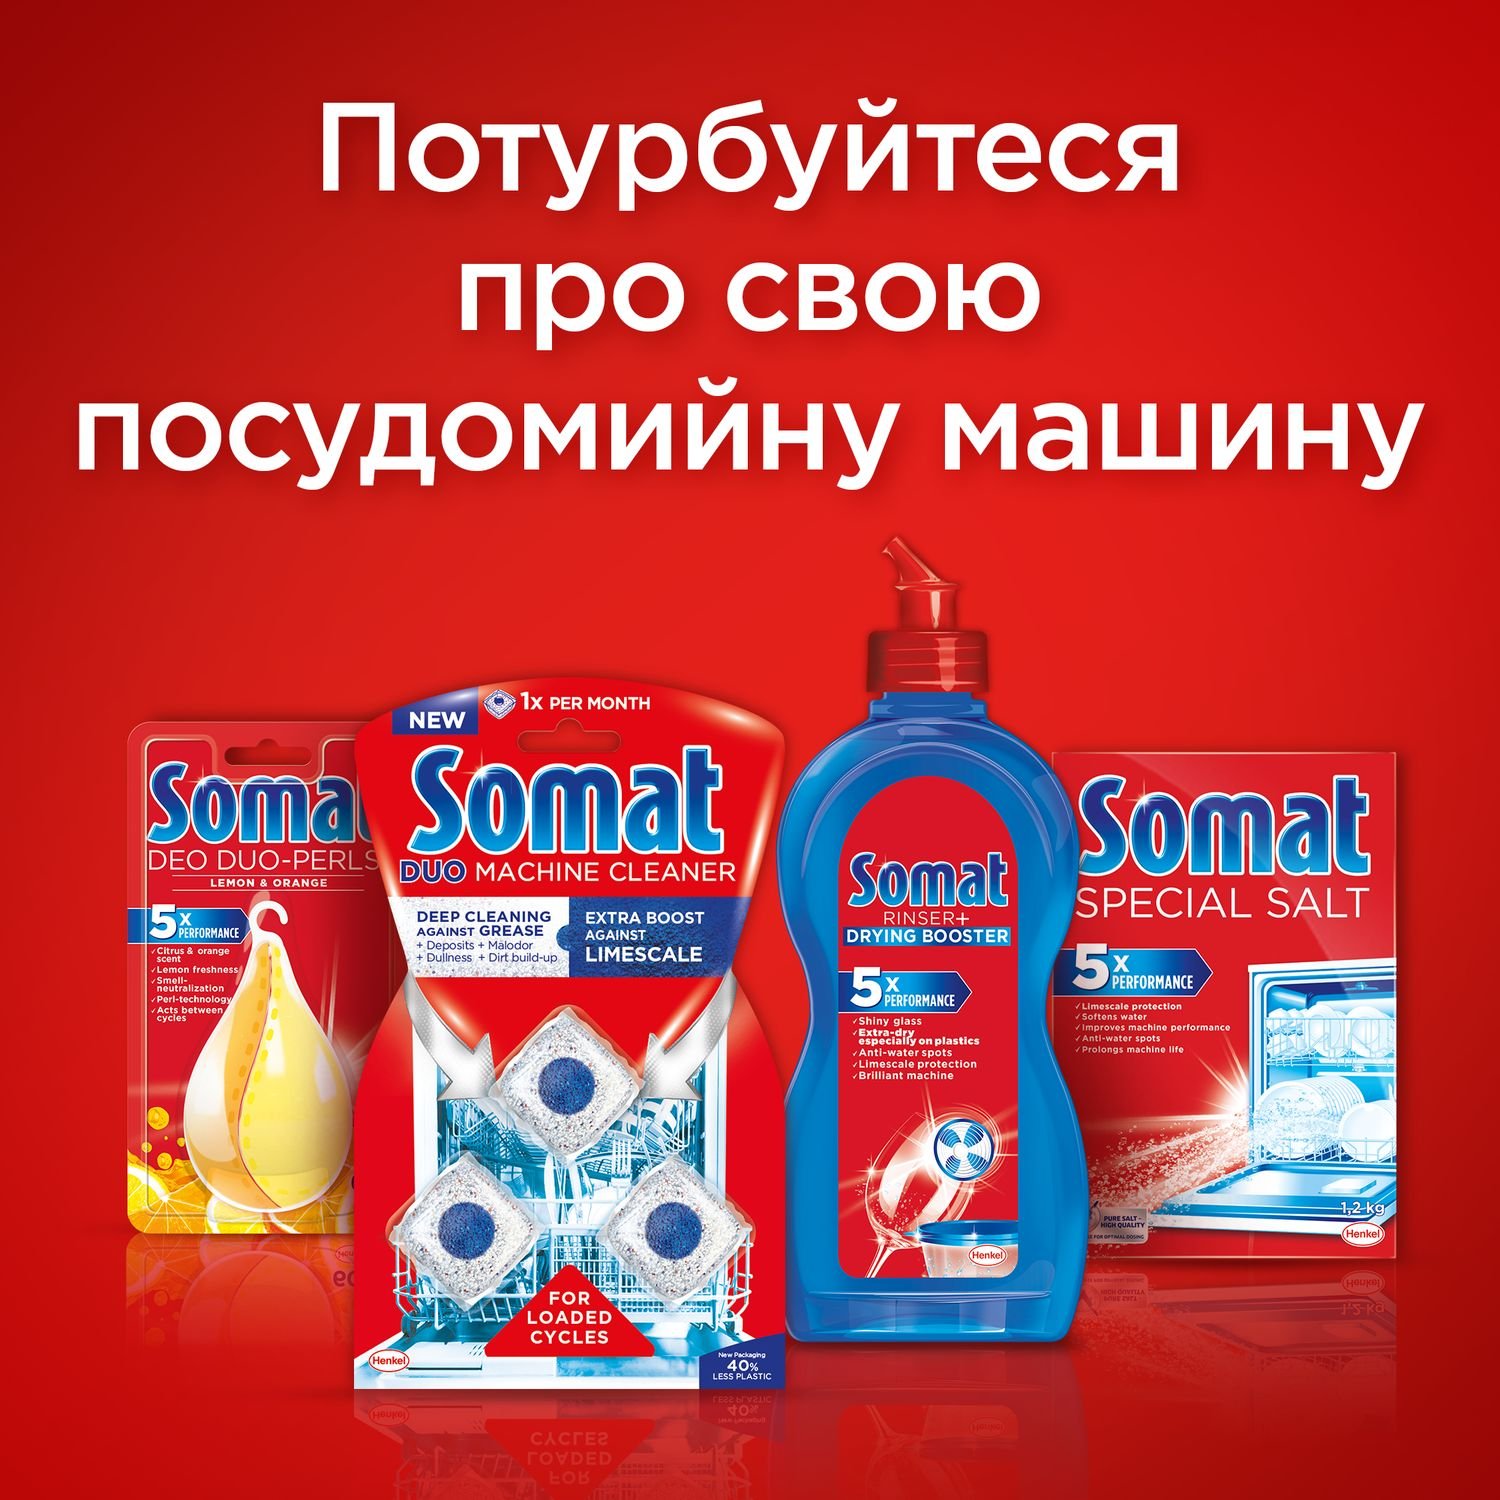 Таблетки для мытья посуды в посудомоечной машине Somat All in one, 120 таблеток - фото 4